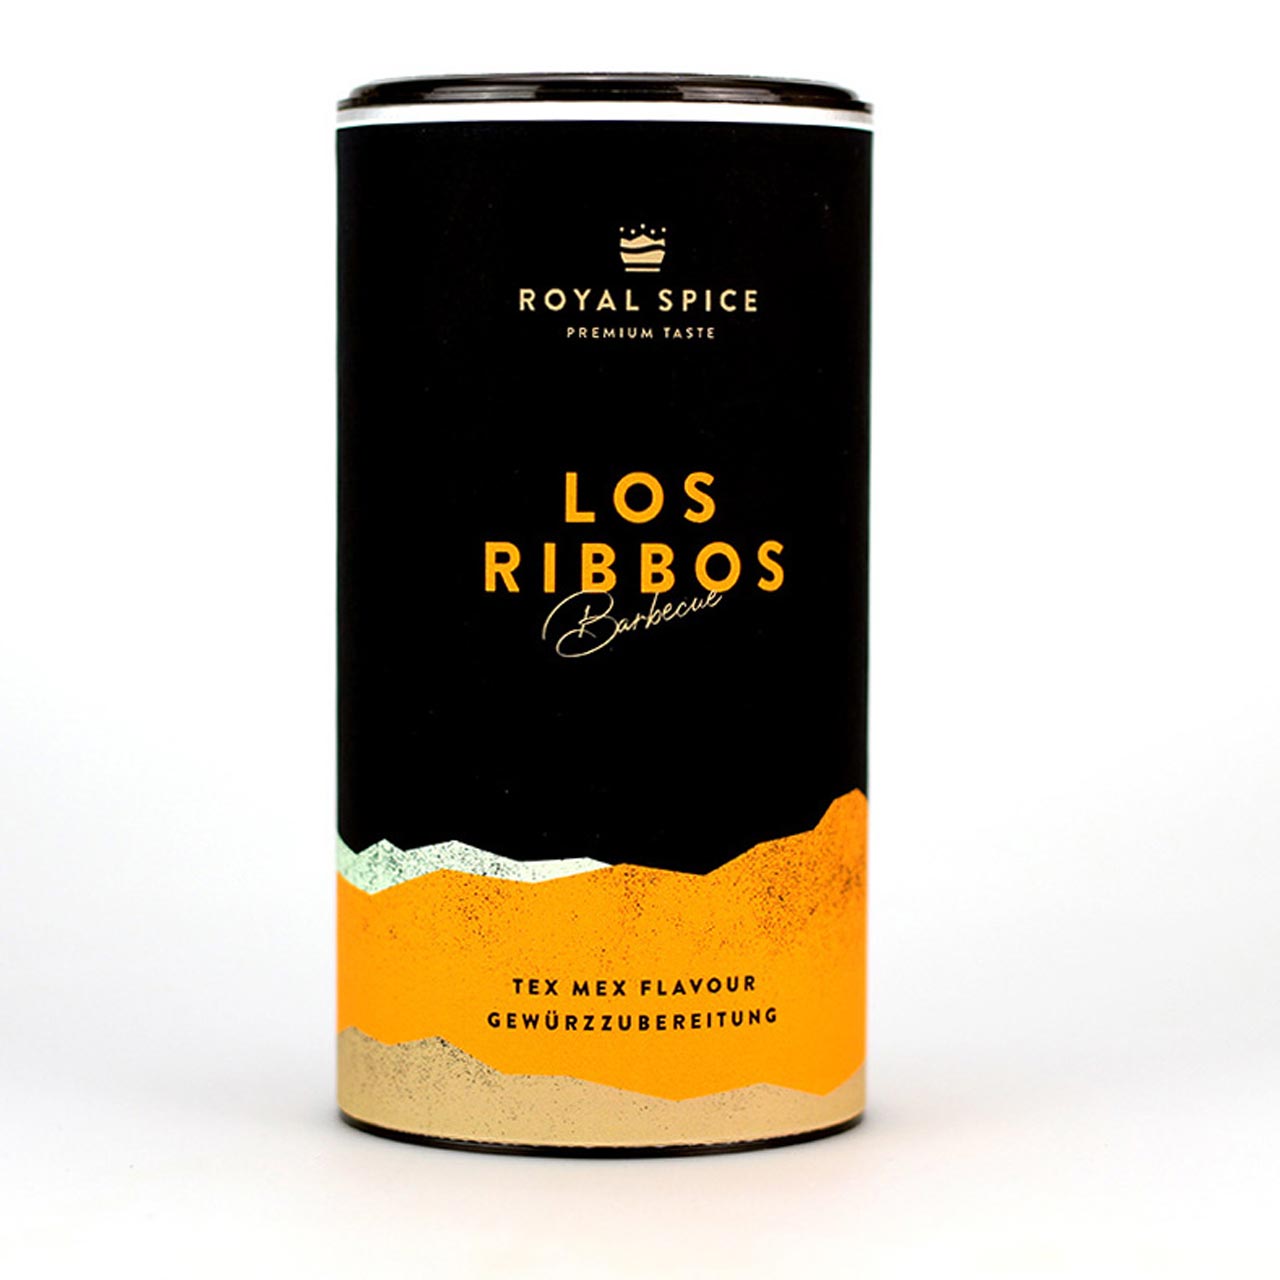 Royal Spice - Los Ribbos 300g